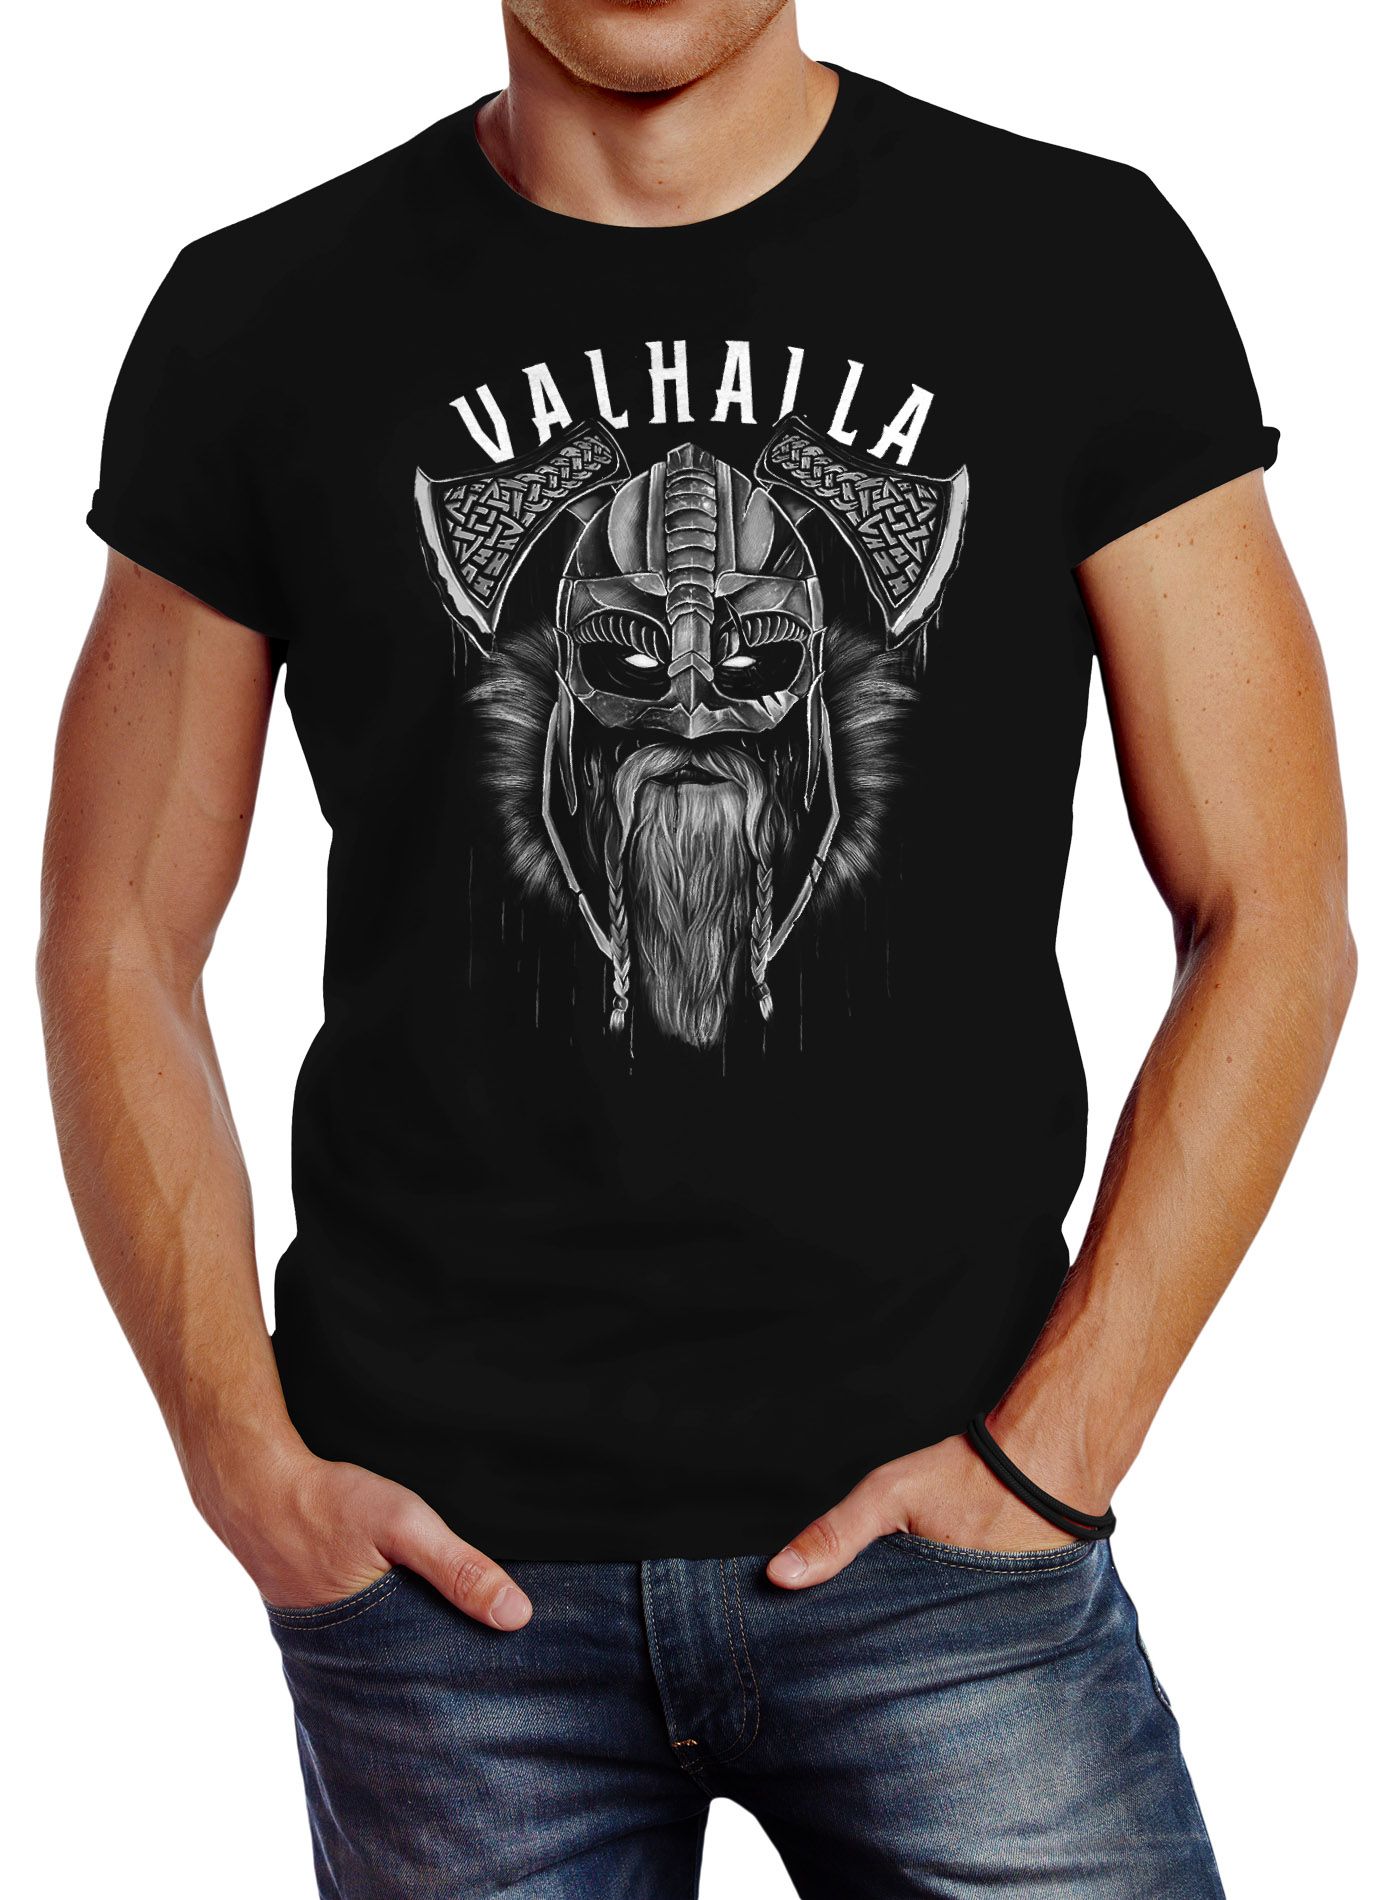 Neverless® Herren T-Shirt Aufdruck Valhalla Wikinger Helm Viking Odin Krieger Printshirt Fashion Streetstyle